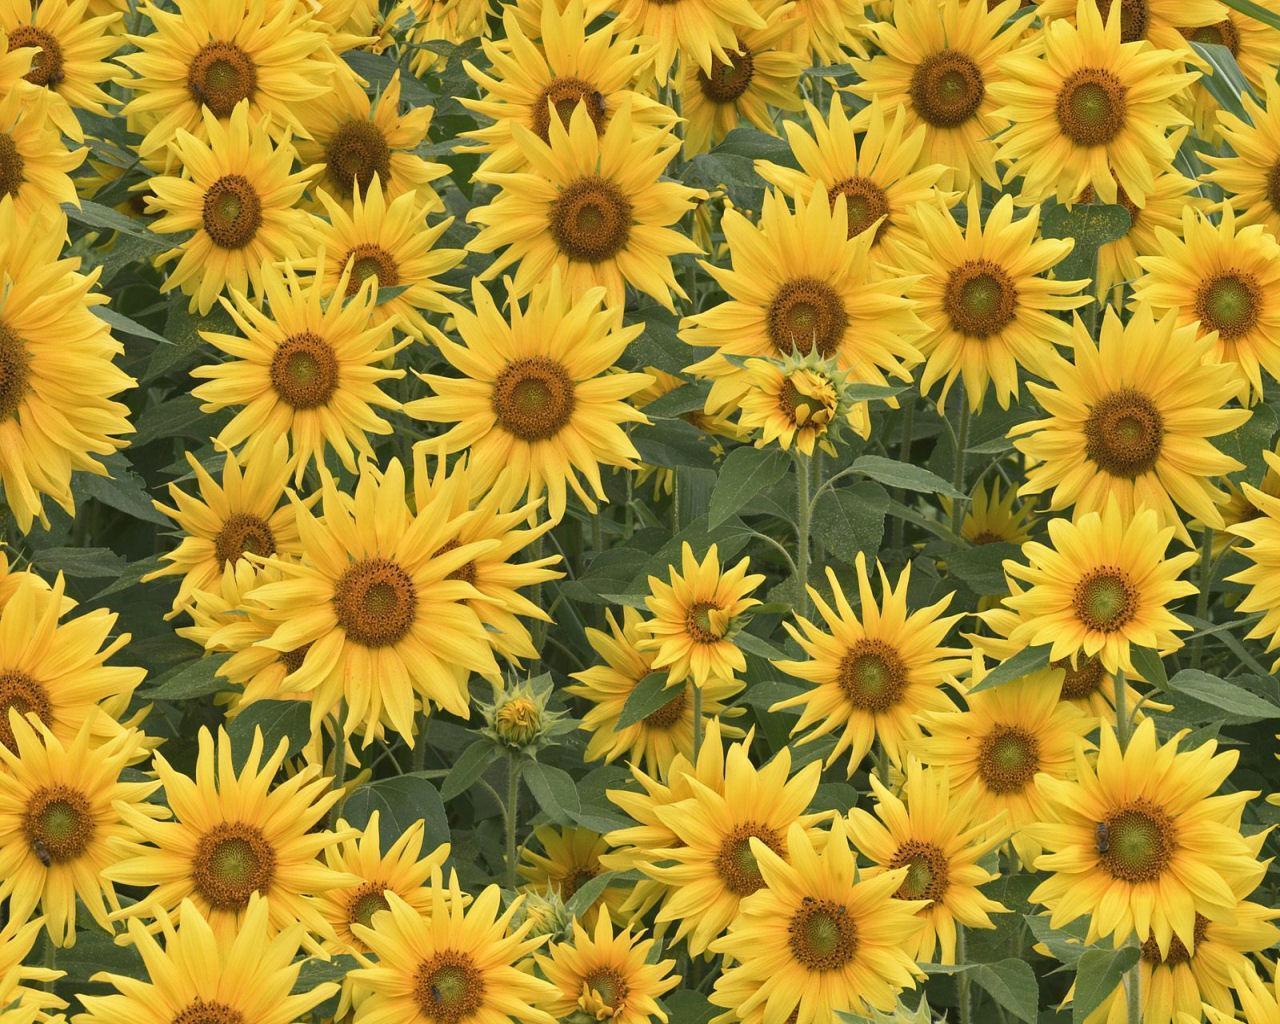 Sunflower Tumblr Backgrounds - wallpaper.